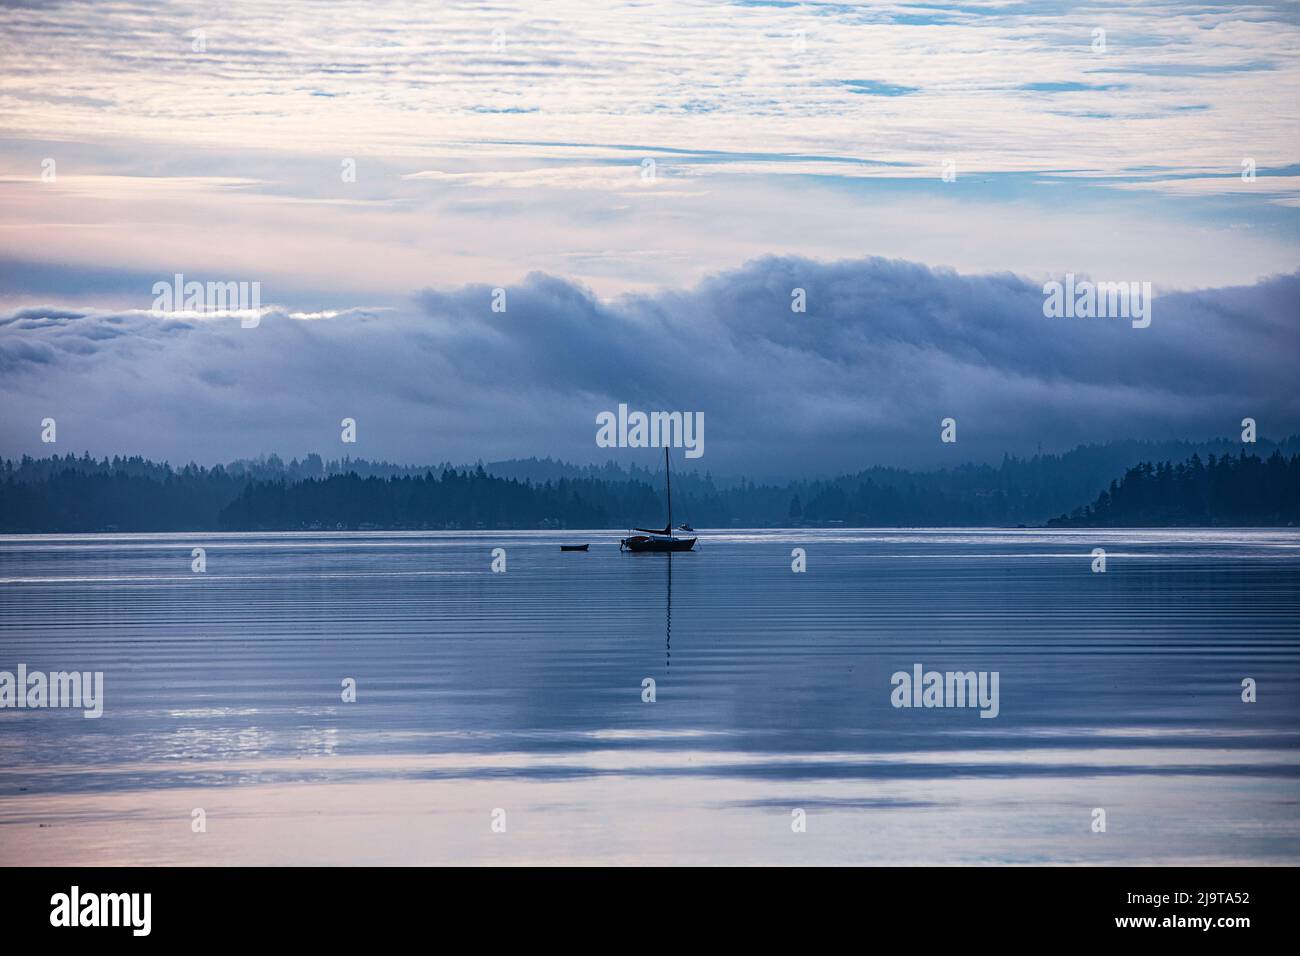 Puget Sound, Silverdale, Kitsap Peninsula, Washington state, USA. Foto Stock